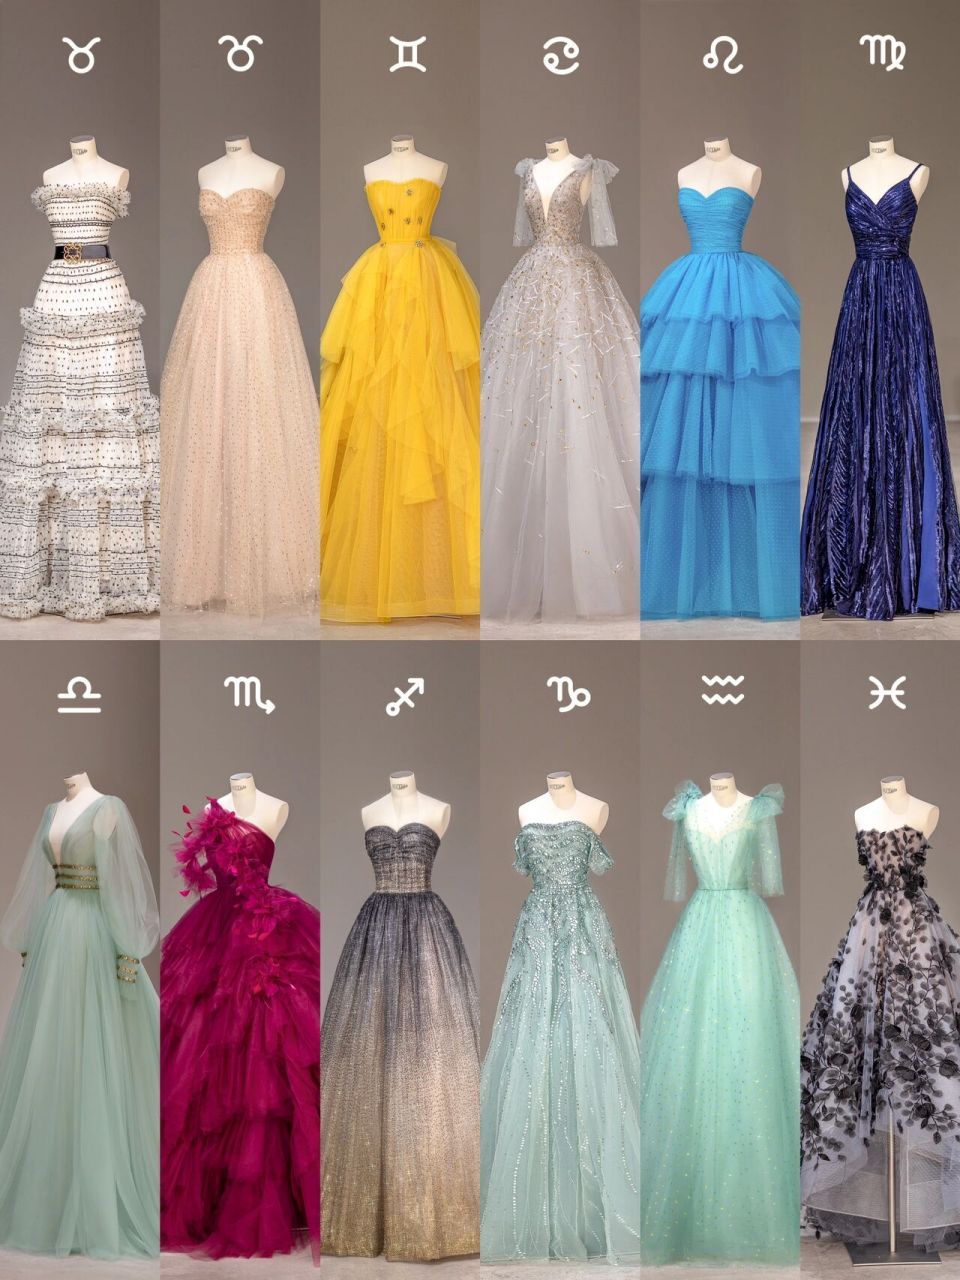 12星座系列61宇宙级浪漫的仙女礼服 盘点那些最适合十二星座的礼服